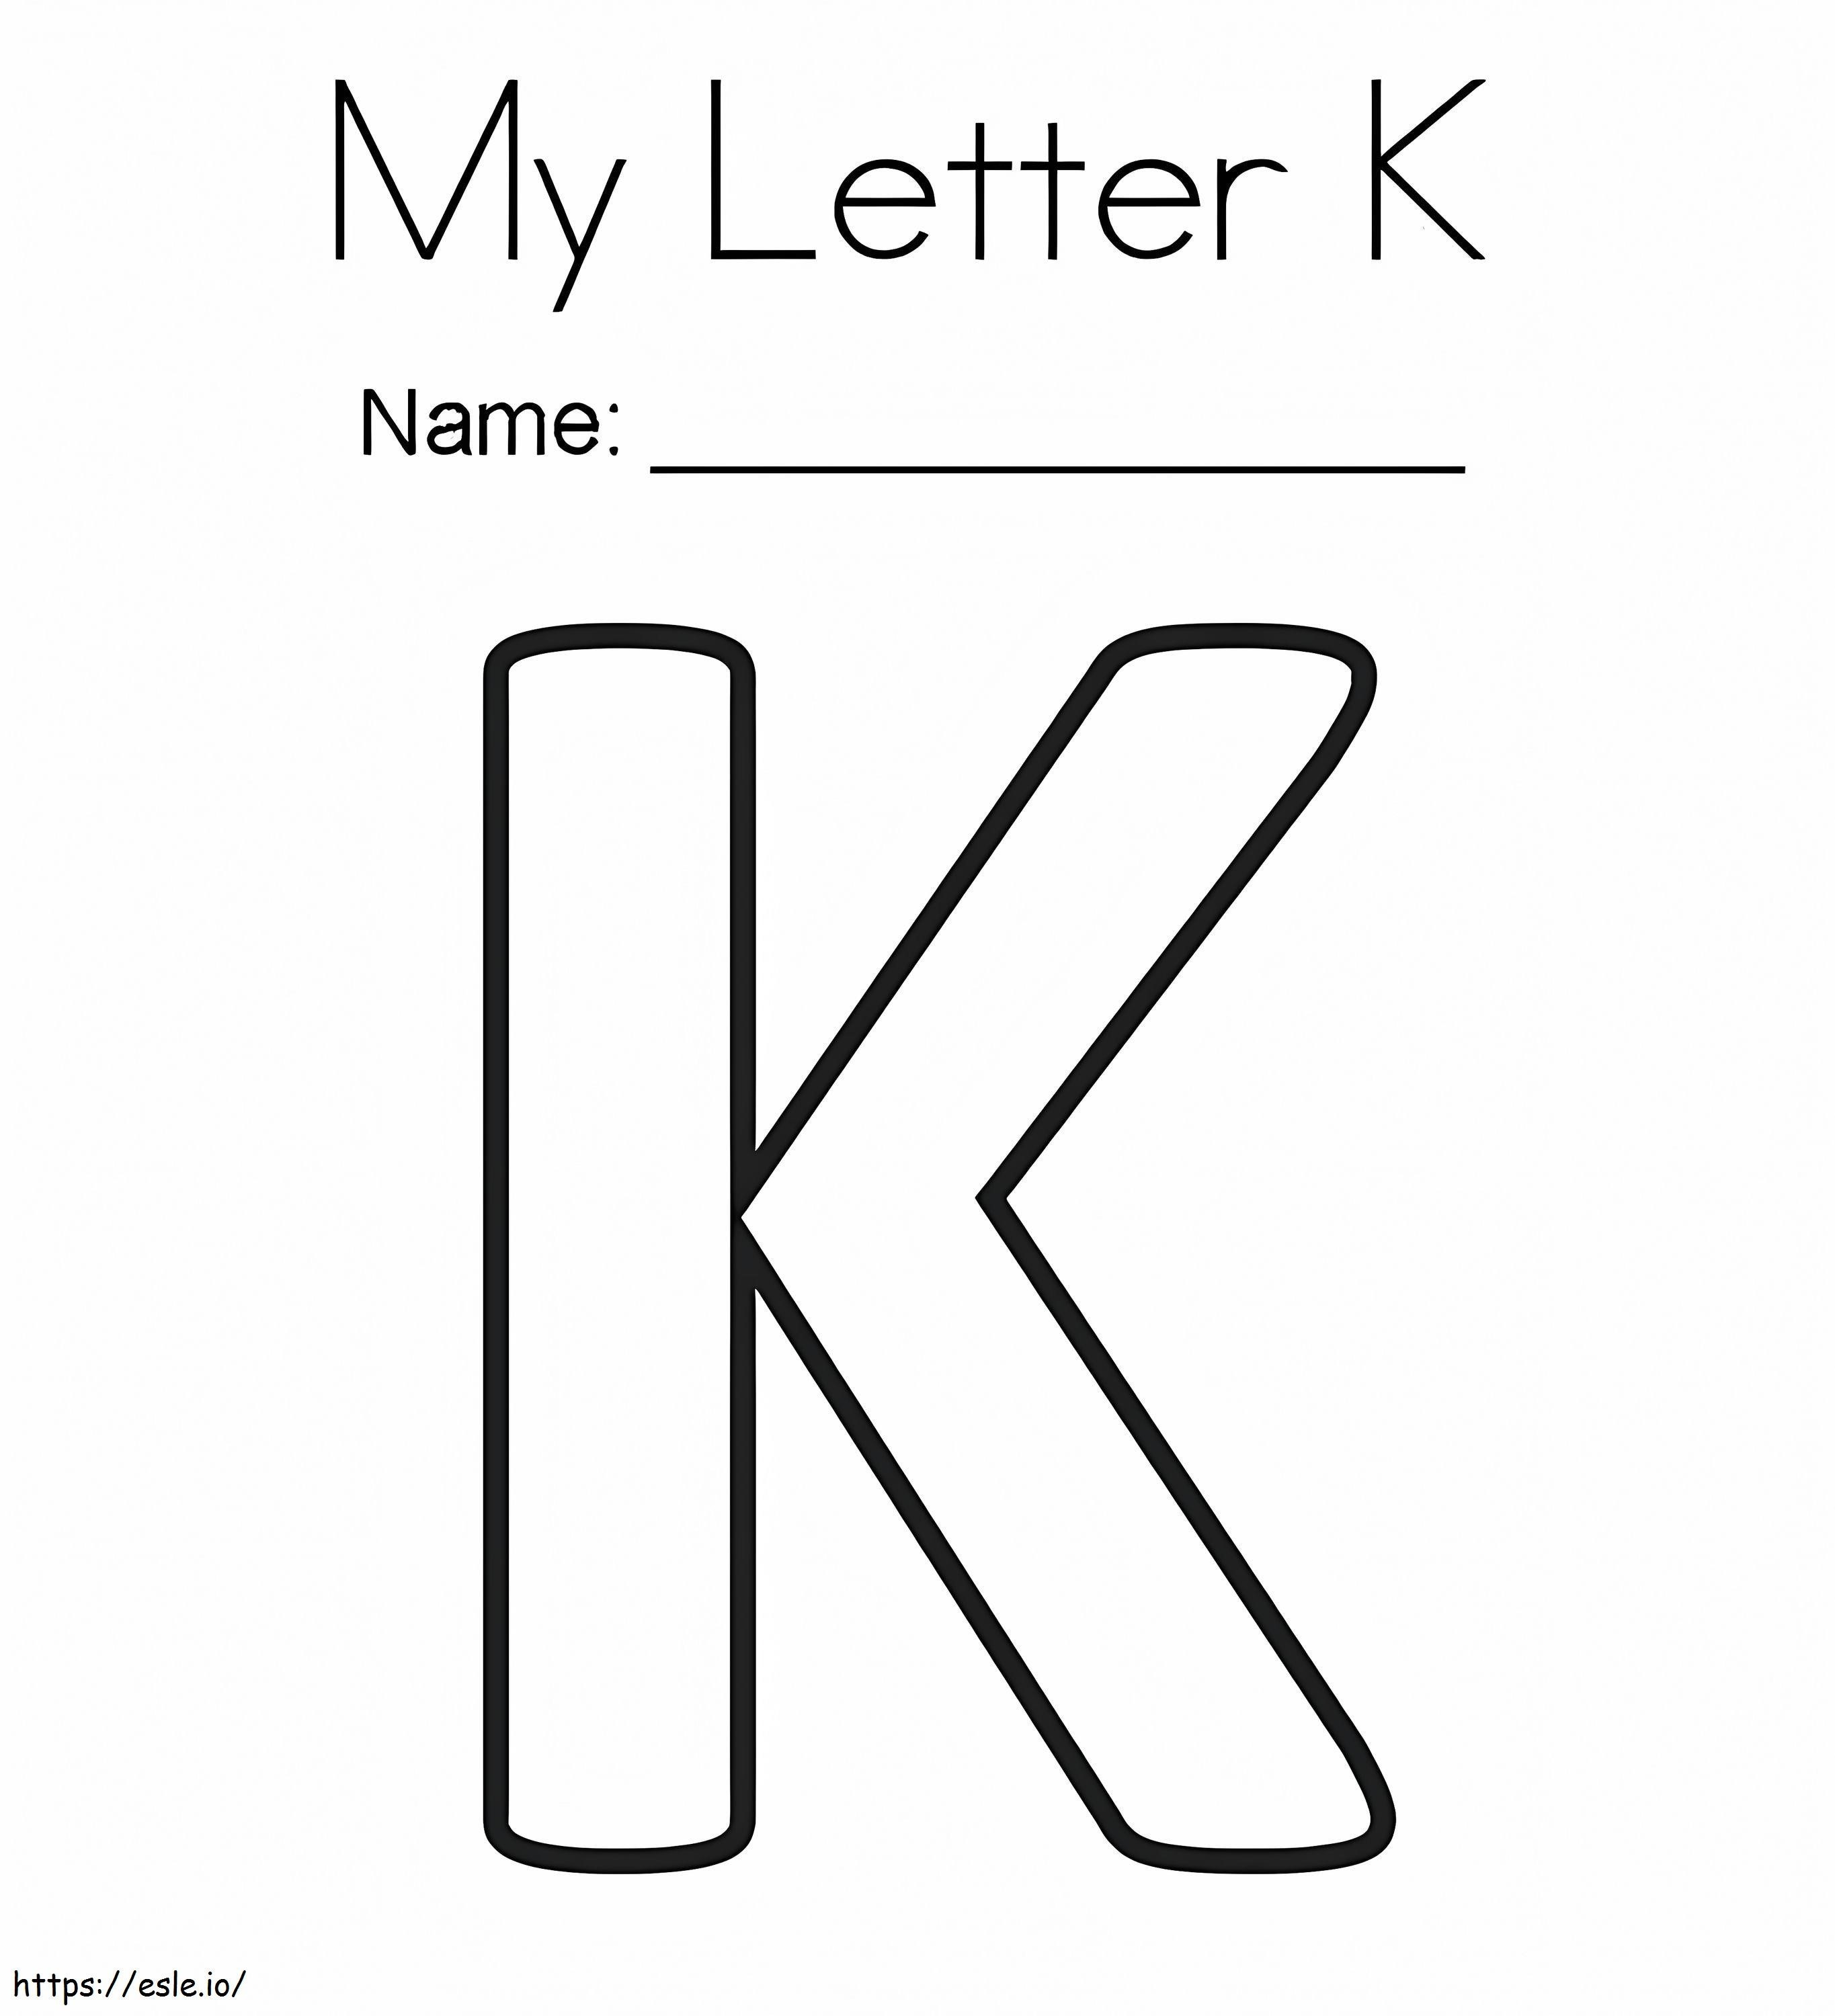 La mia lettera K da colorare